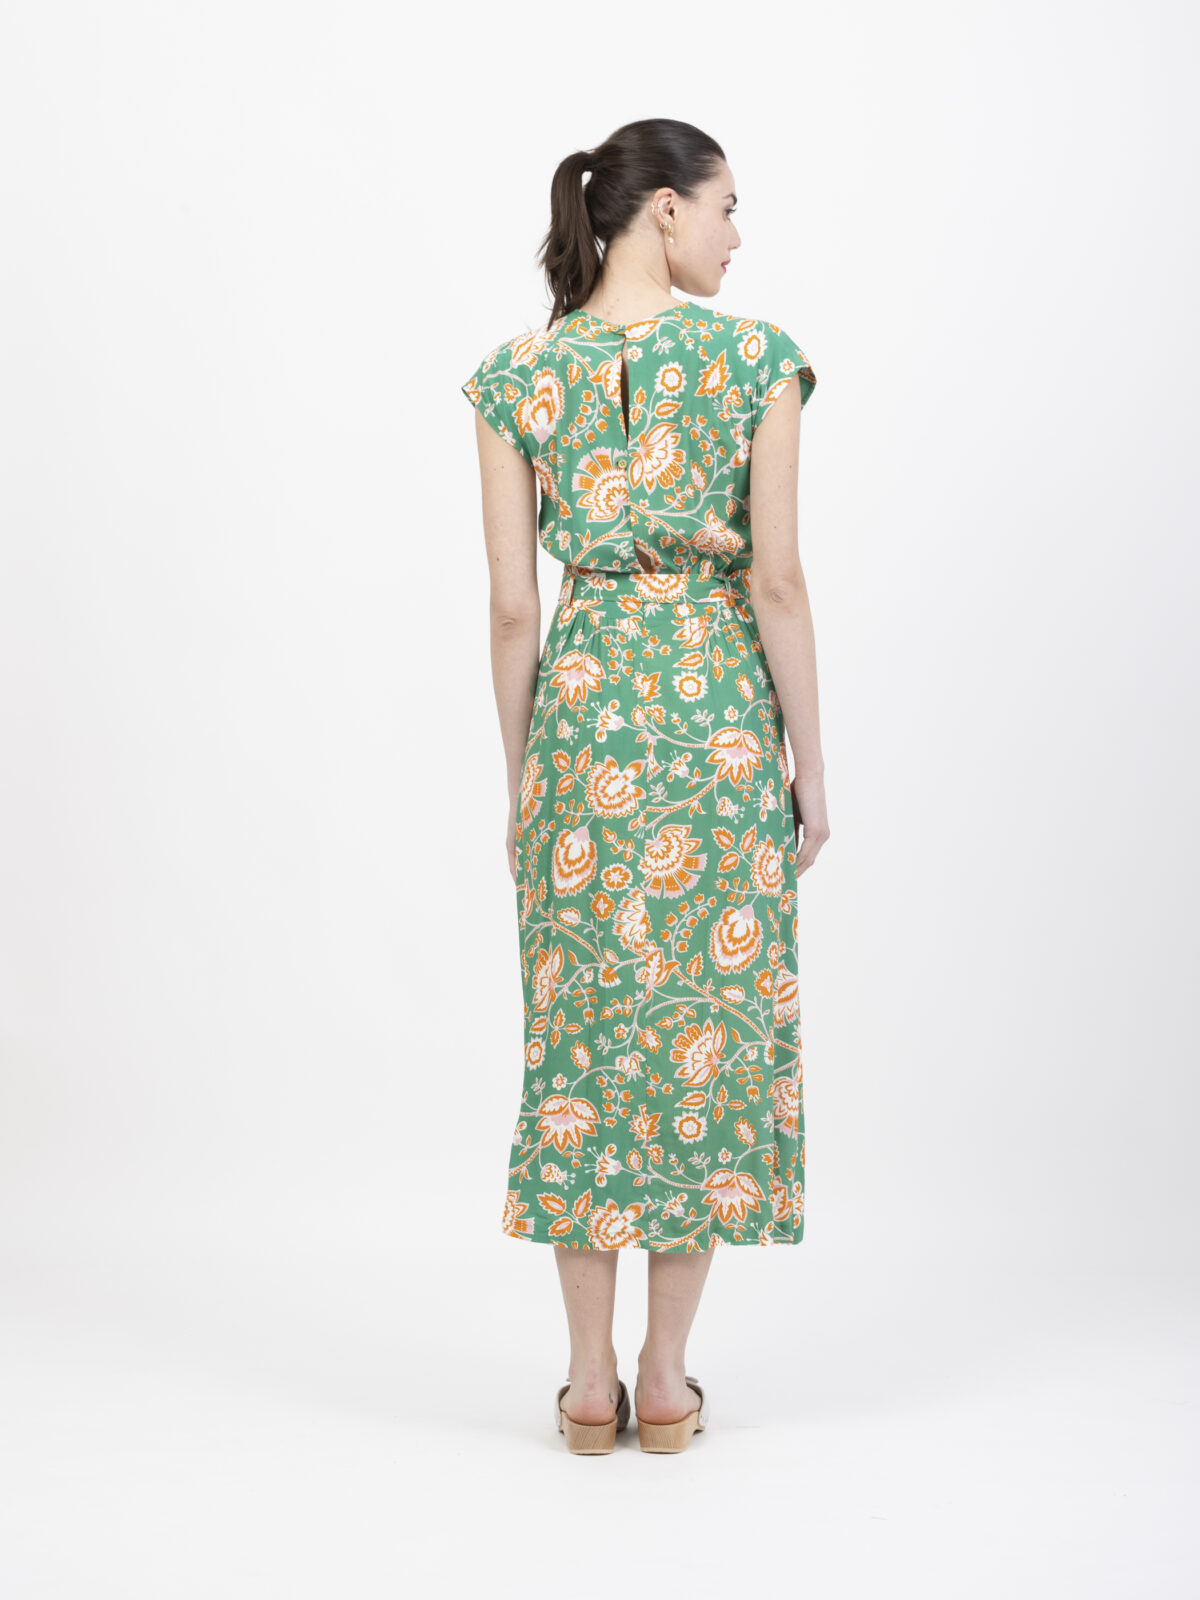 relachee-green-floral-dress-petite-francaise-matchboxathens-shop-online-buy-athens